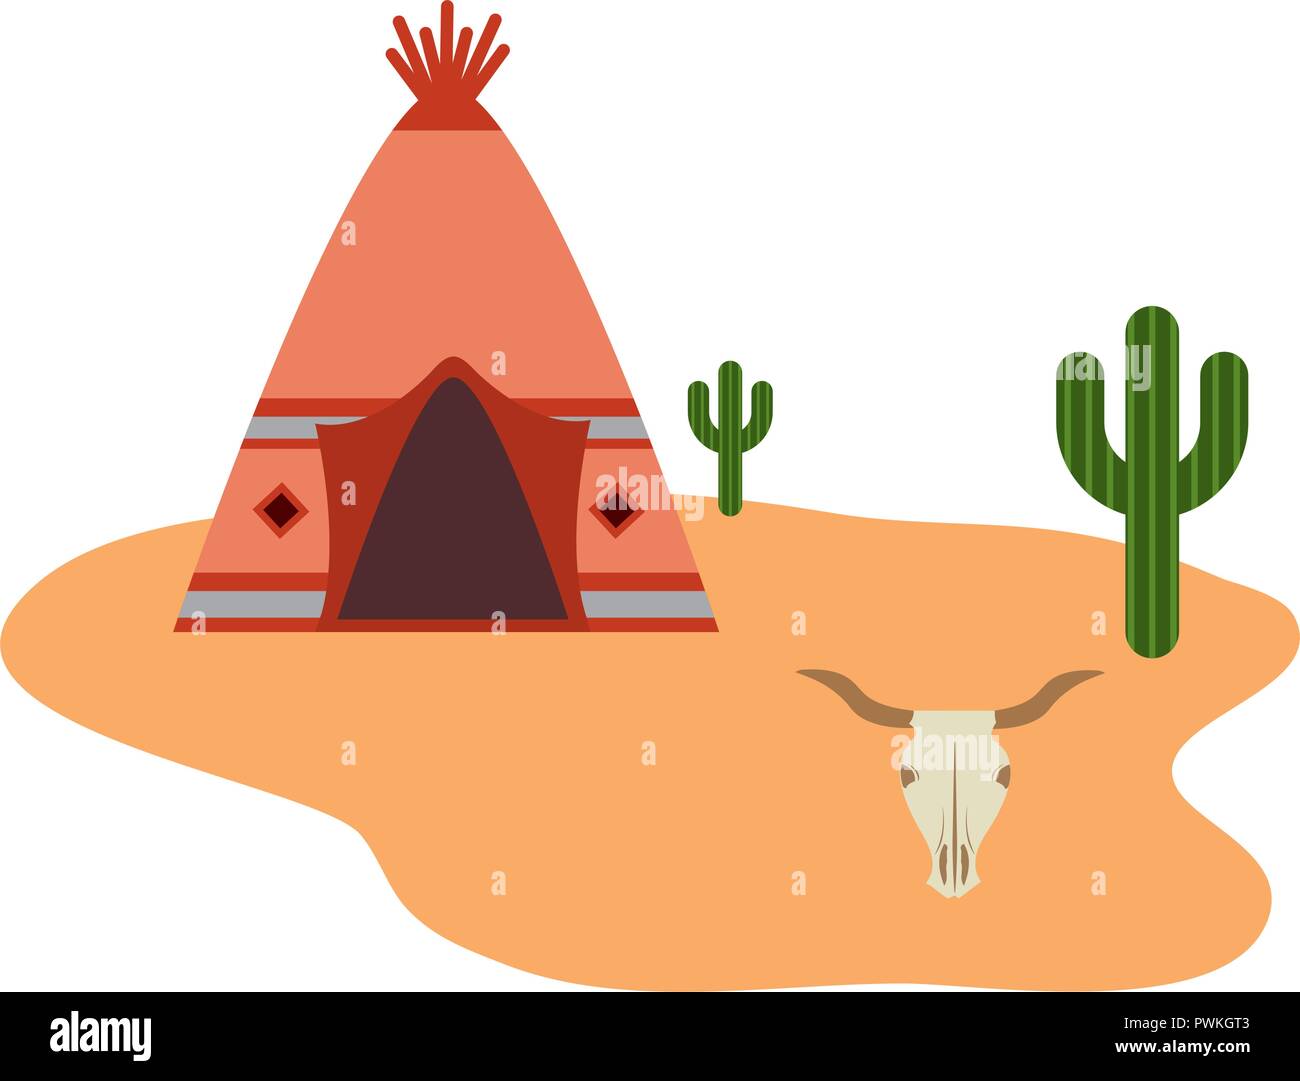 teepee native american cactus desert skull bull vector illustration Stock Vector